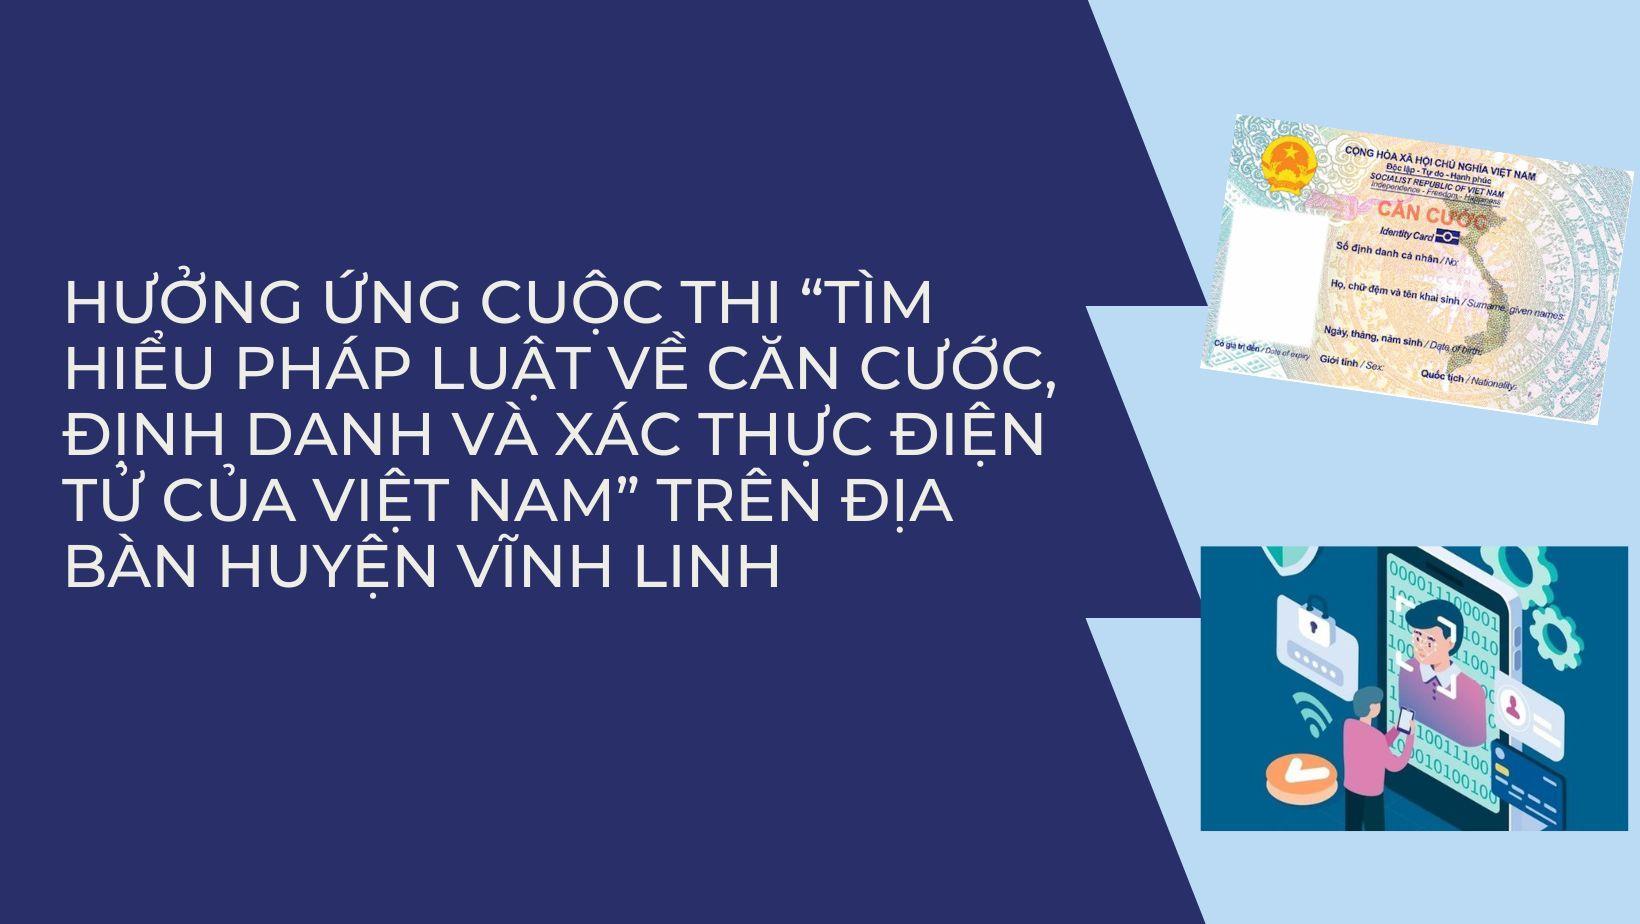 Vĩnh Linh: Triển khai tổ chức cuộc thi “Tìm hiểu pháp luật về căn cước, định danh và xác thực điện tử của Việt Nam”